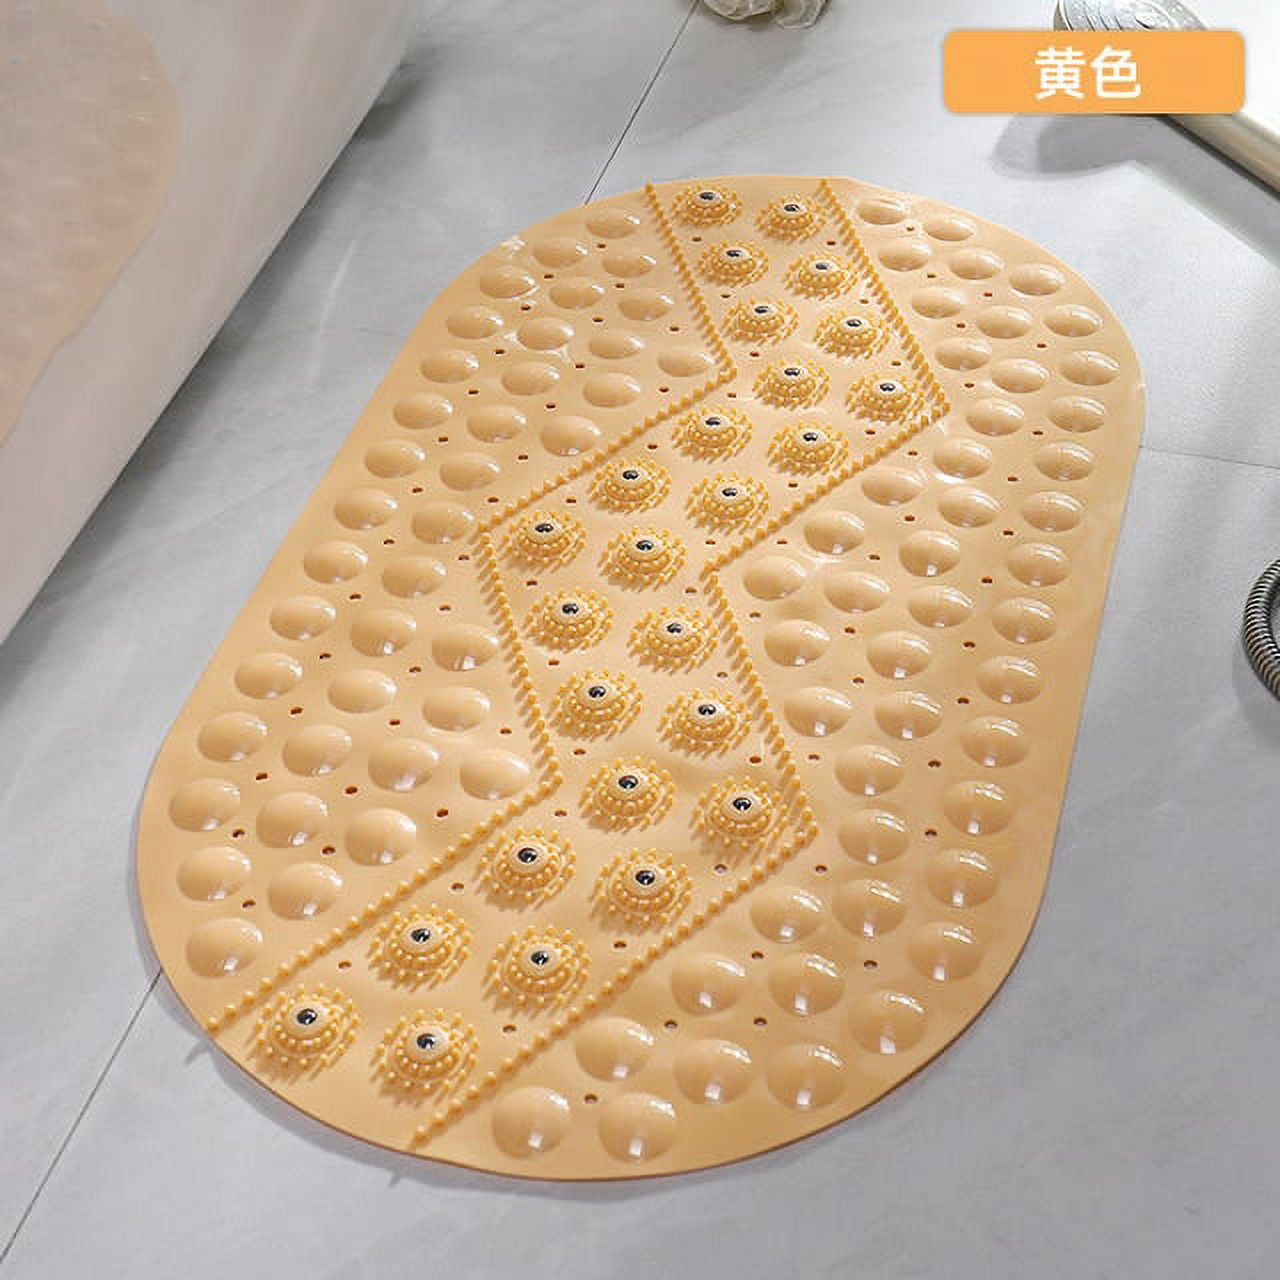 55X55cmTextured Surface Round Non Slip Shower Mat Anti Slip Bath